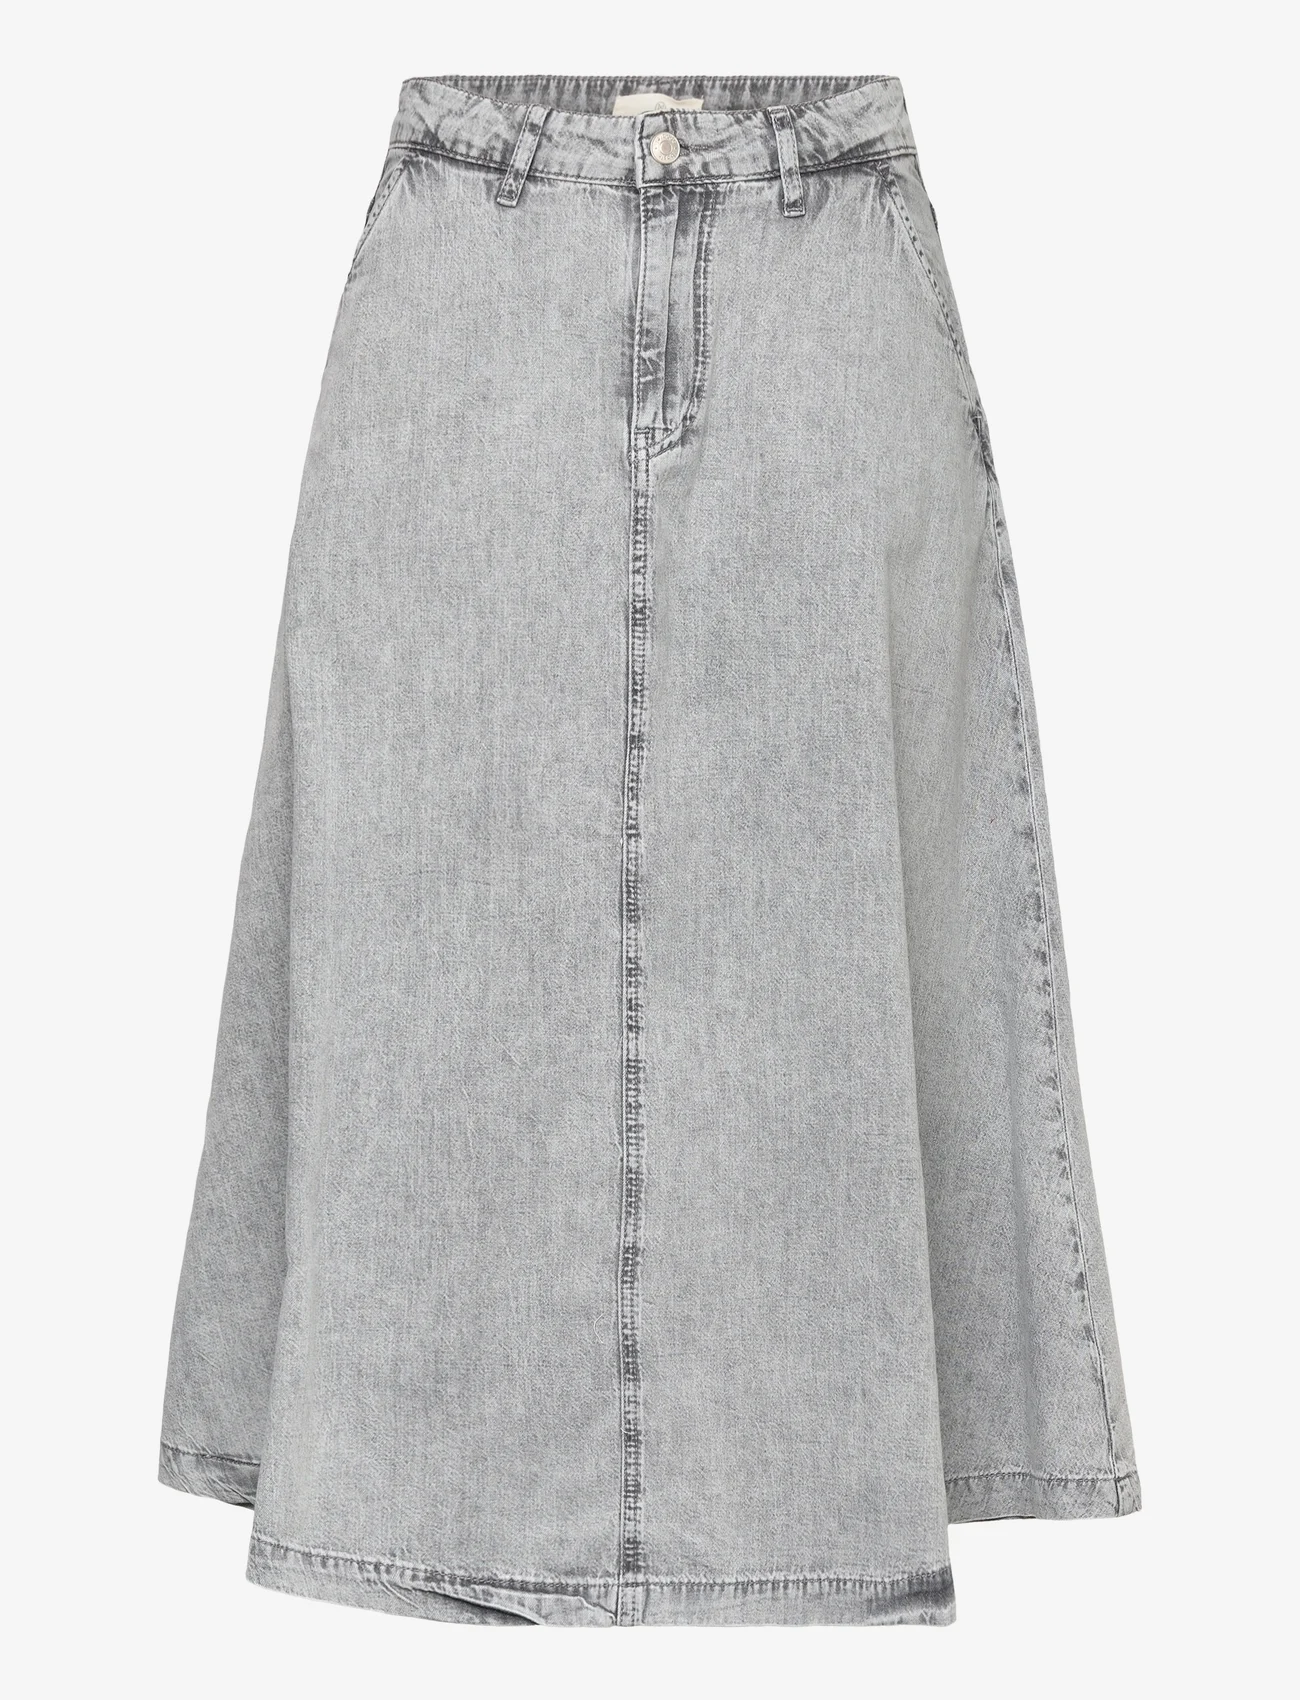 Basic Apparel - Bluebell Skirt - grey - 0